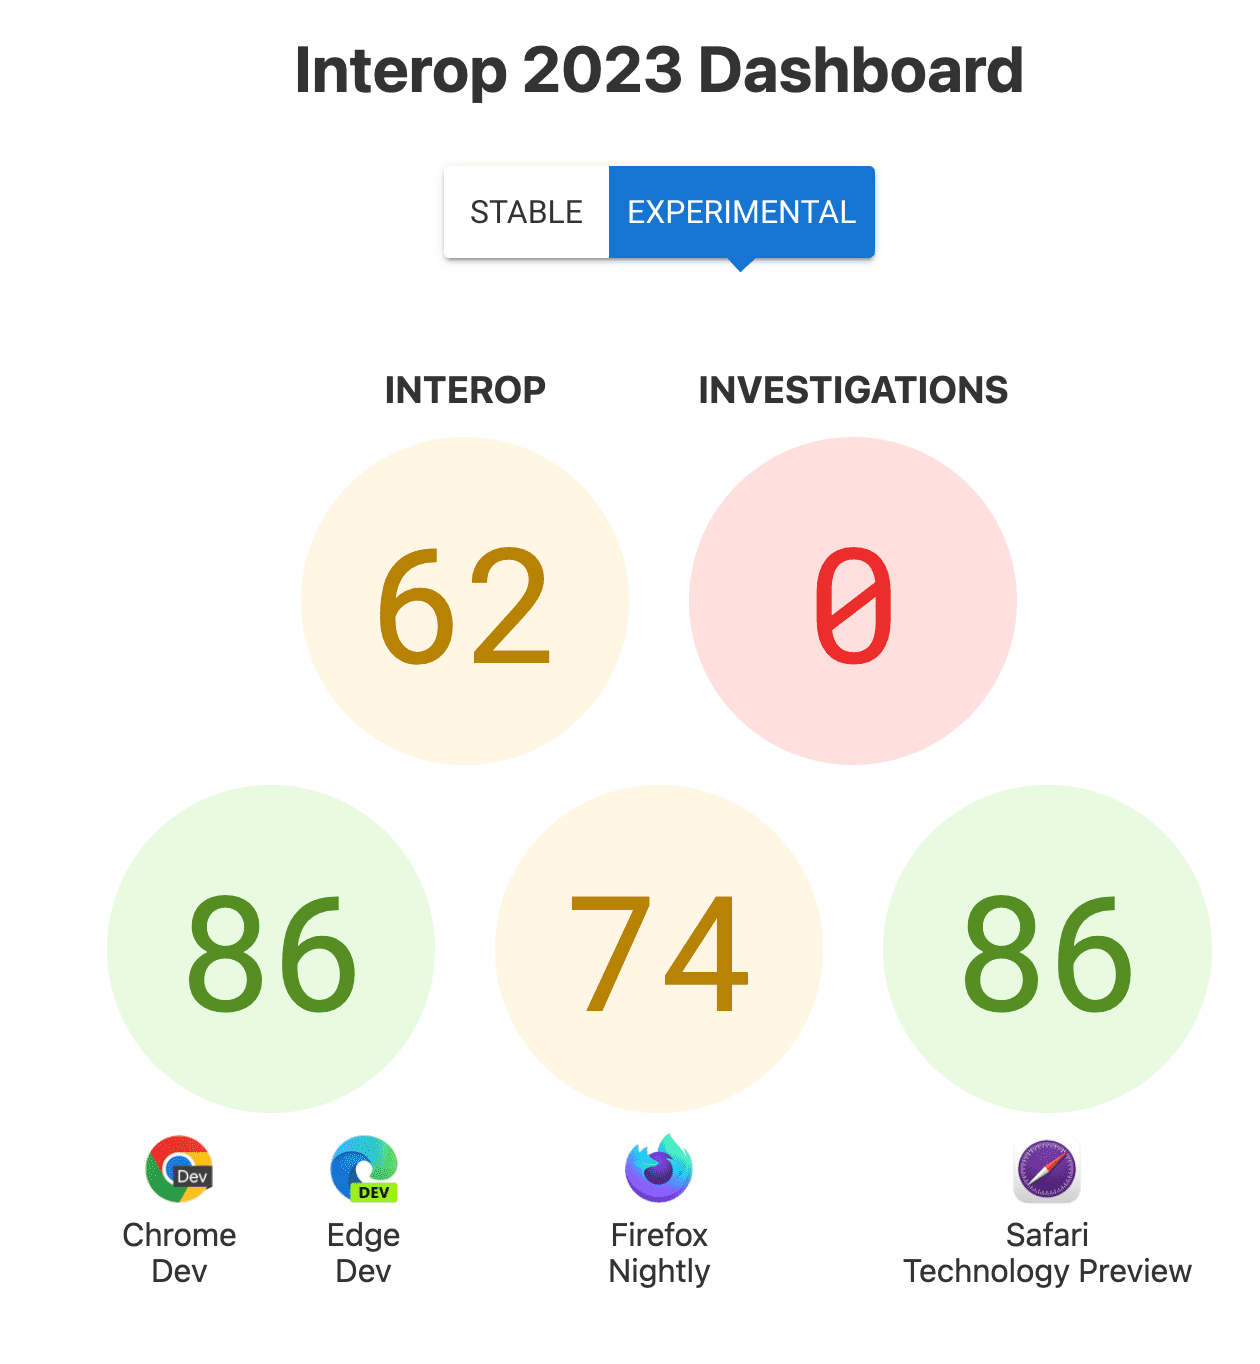 互操作性总体得分：62；调查结果：0；每个浏览器的得分 - Chrome 和 Edge 为 86，Firefox 为 74，Safari Technology Preview 为 86。